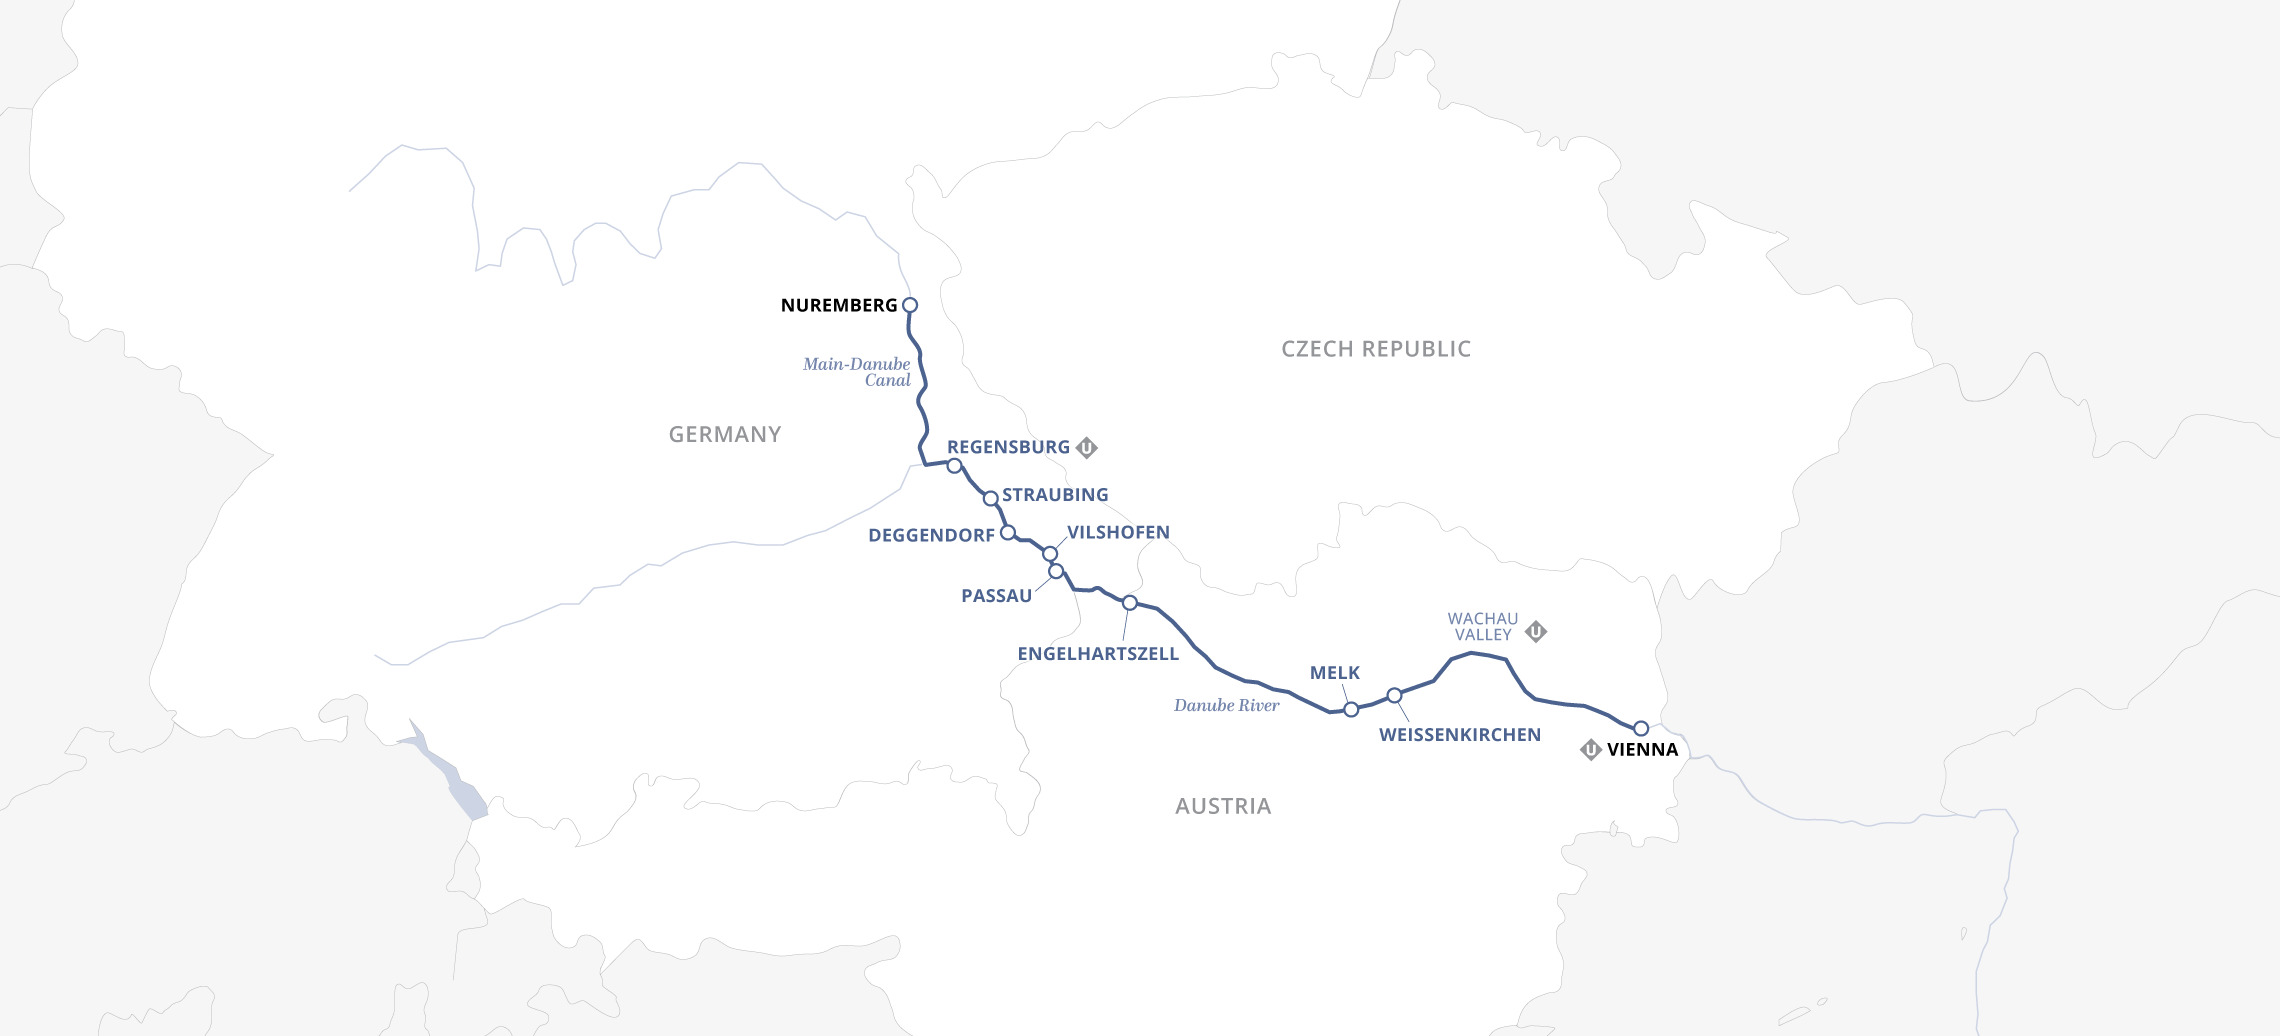 Uniworld River Cruise 8 Days Vienna To Nuremberg Map 8242 